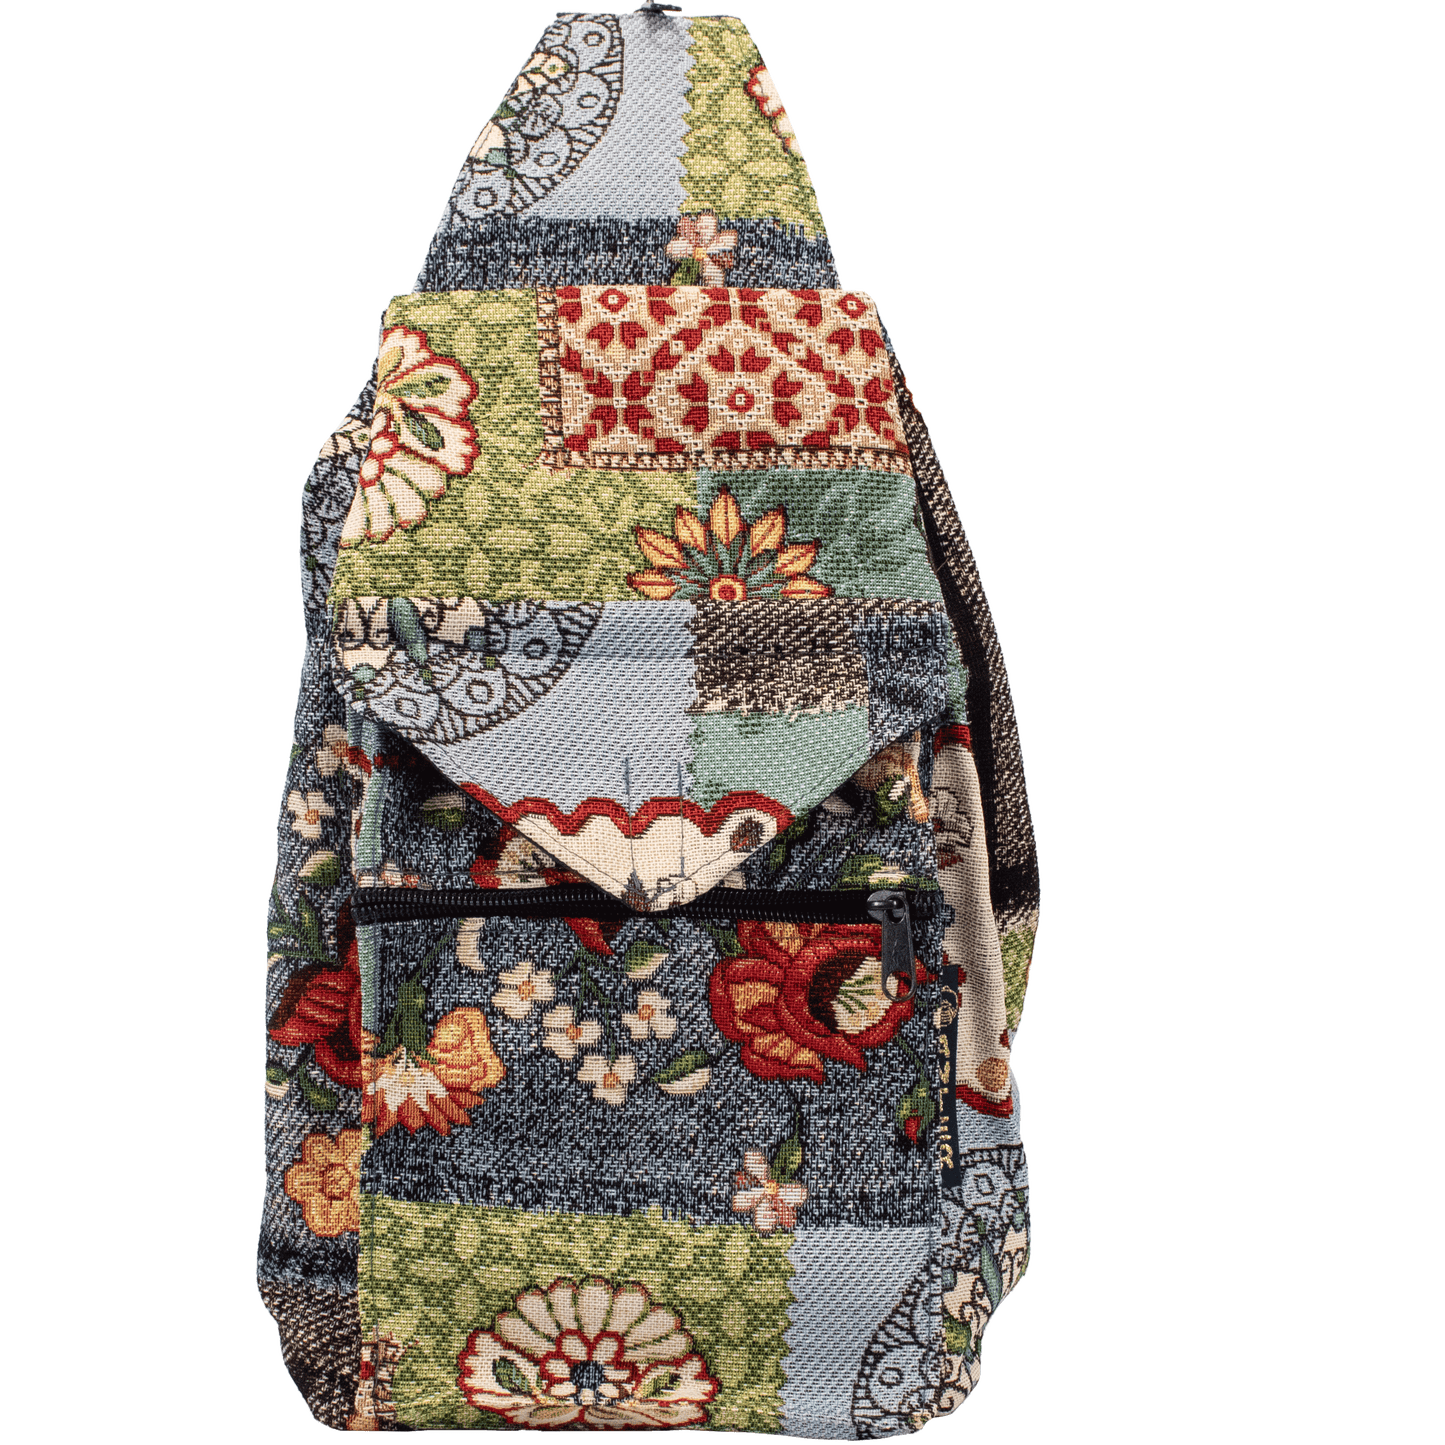 Convertible backpack shoulder bag navy blue green red floral patchwork pattern